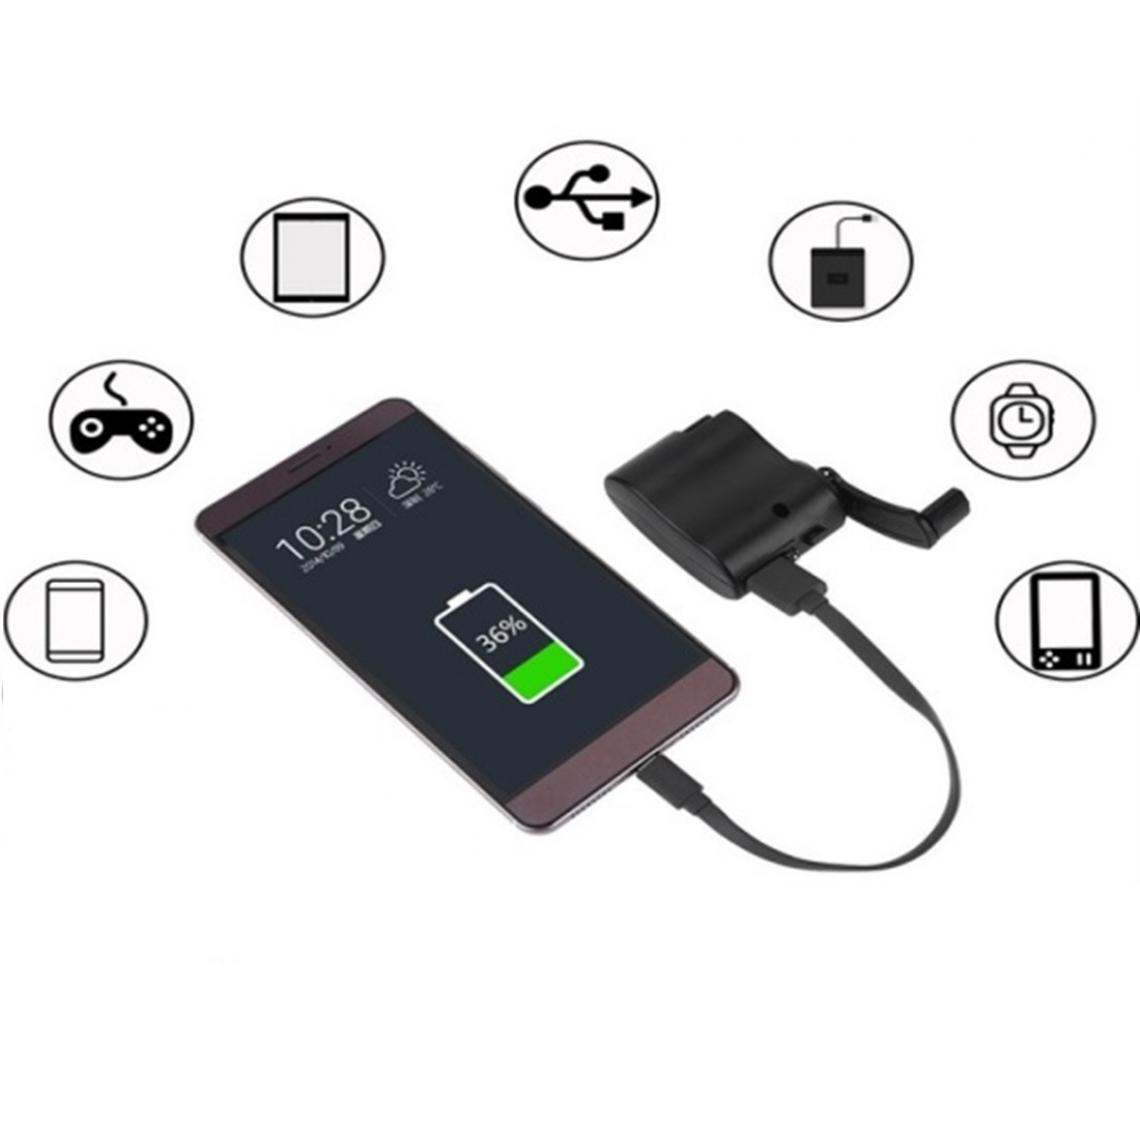 Shot - Dynamo pour LG G6 Smartphone Chargeur USB Batterie Manivelle Secours (NOIR) - Autres accessoires smartphone